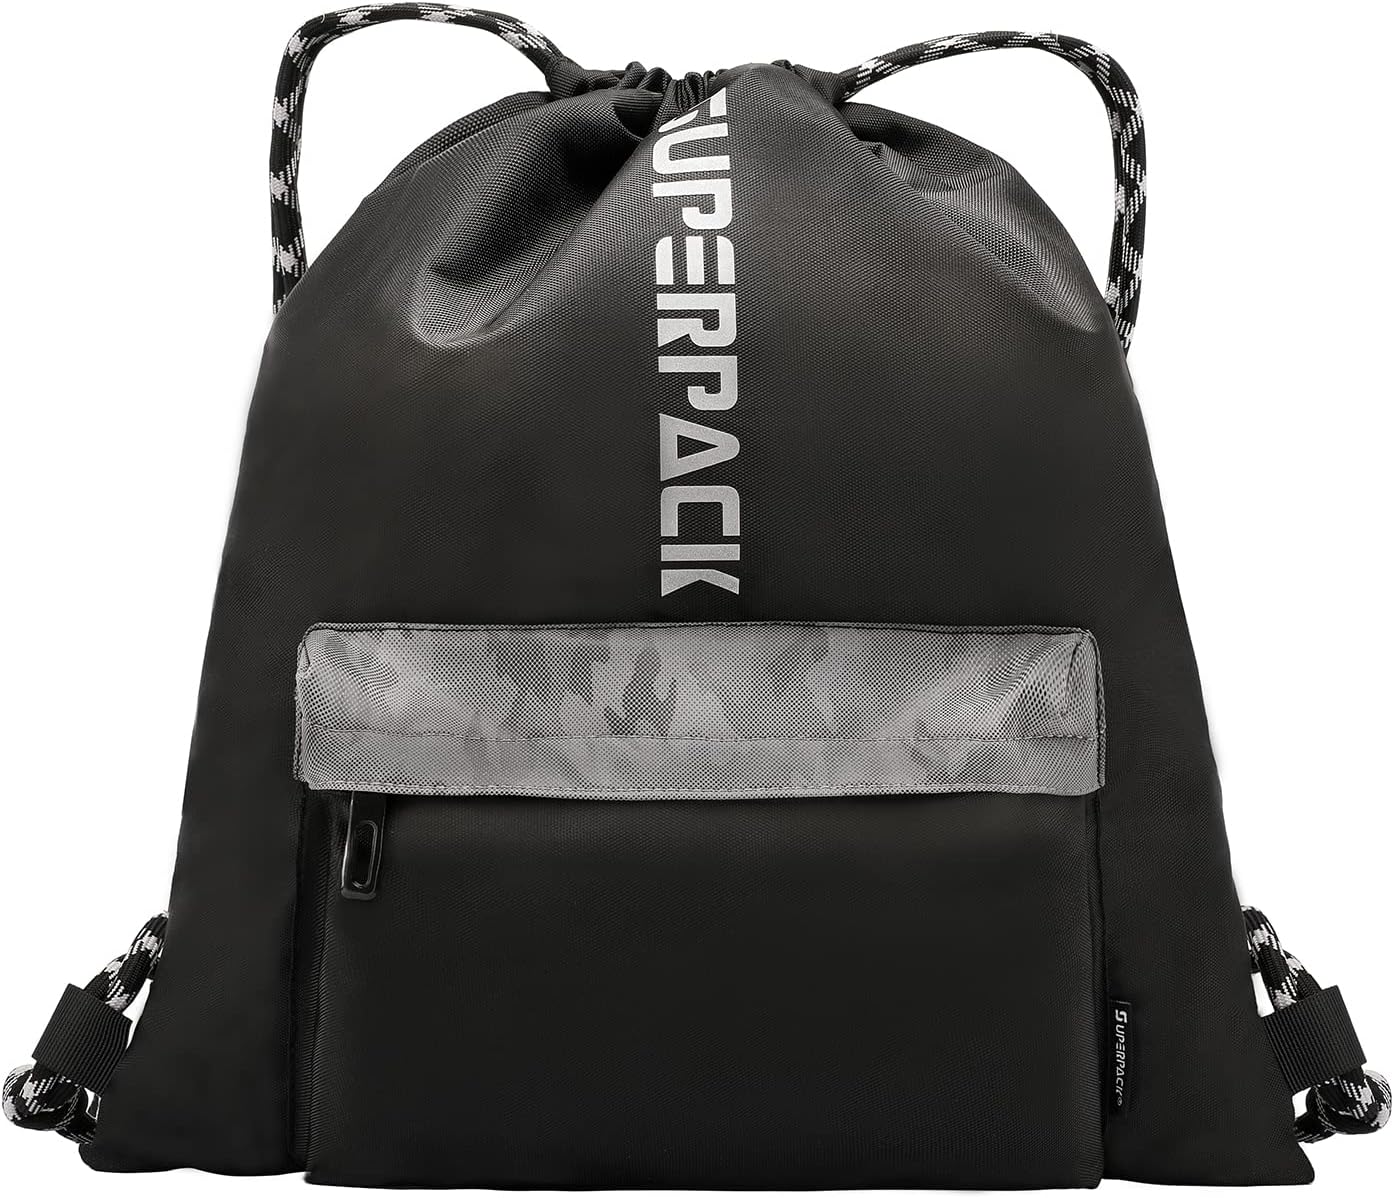 Aiditex Drawstring Backpack for Men Black Sport Gym Sack Bag 